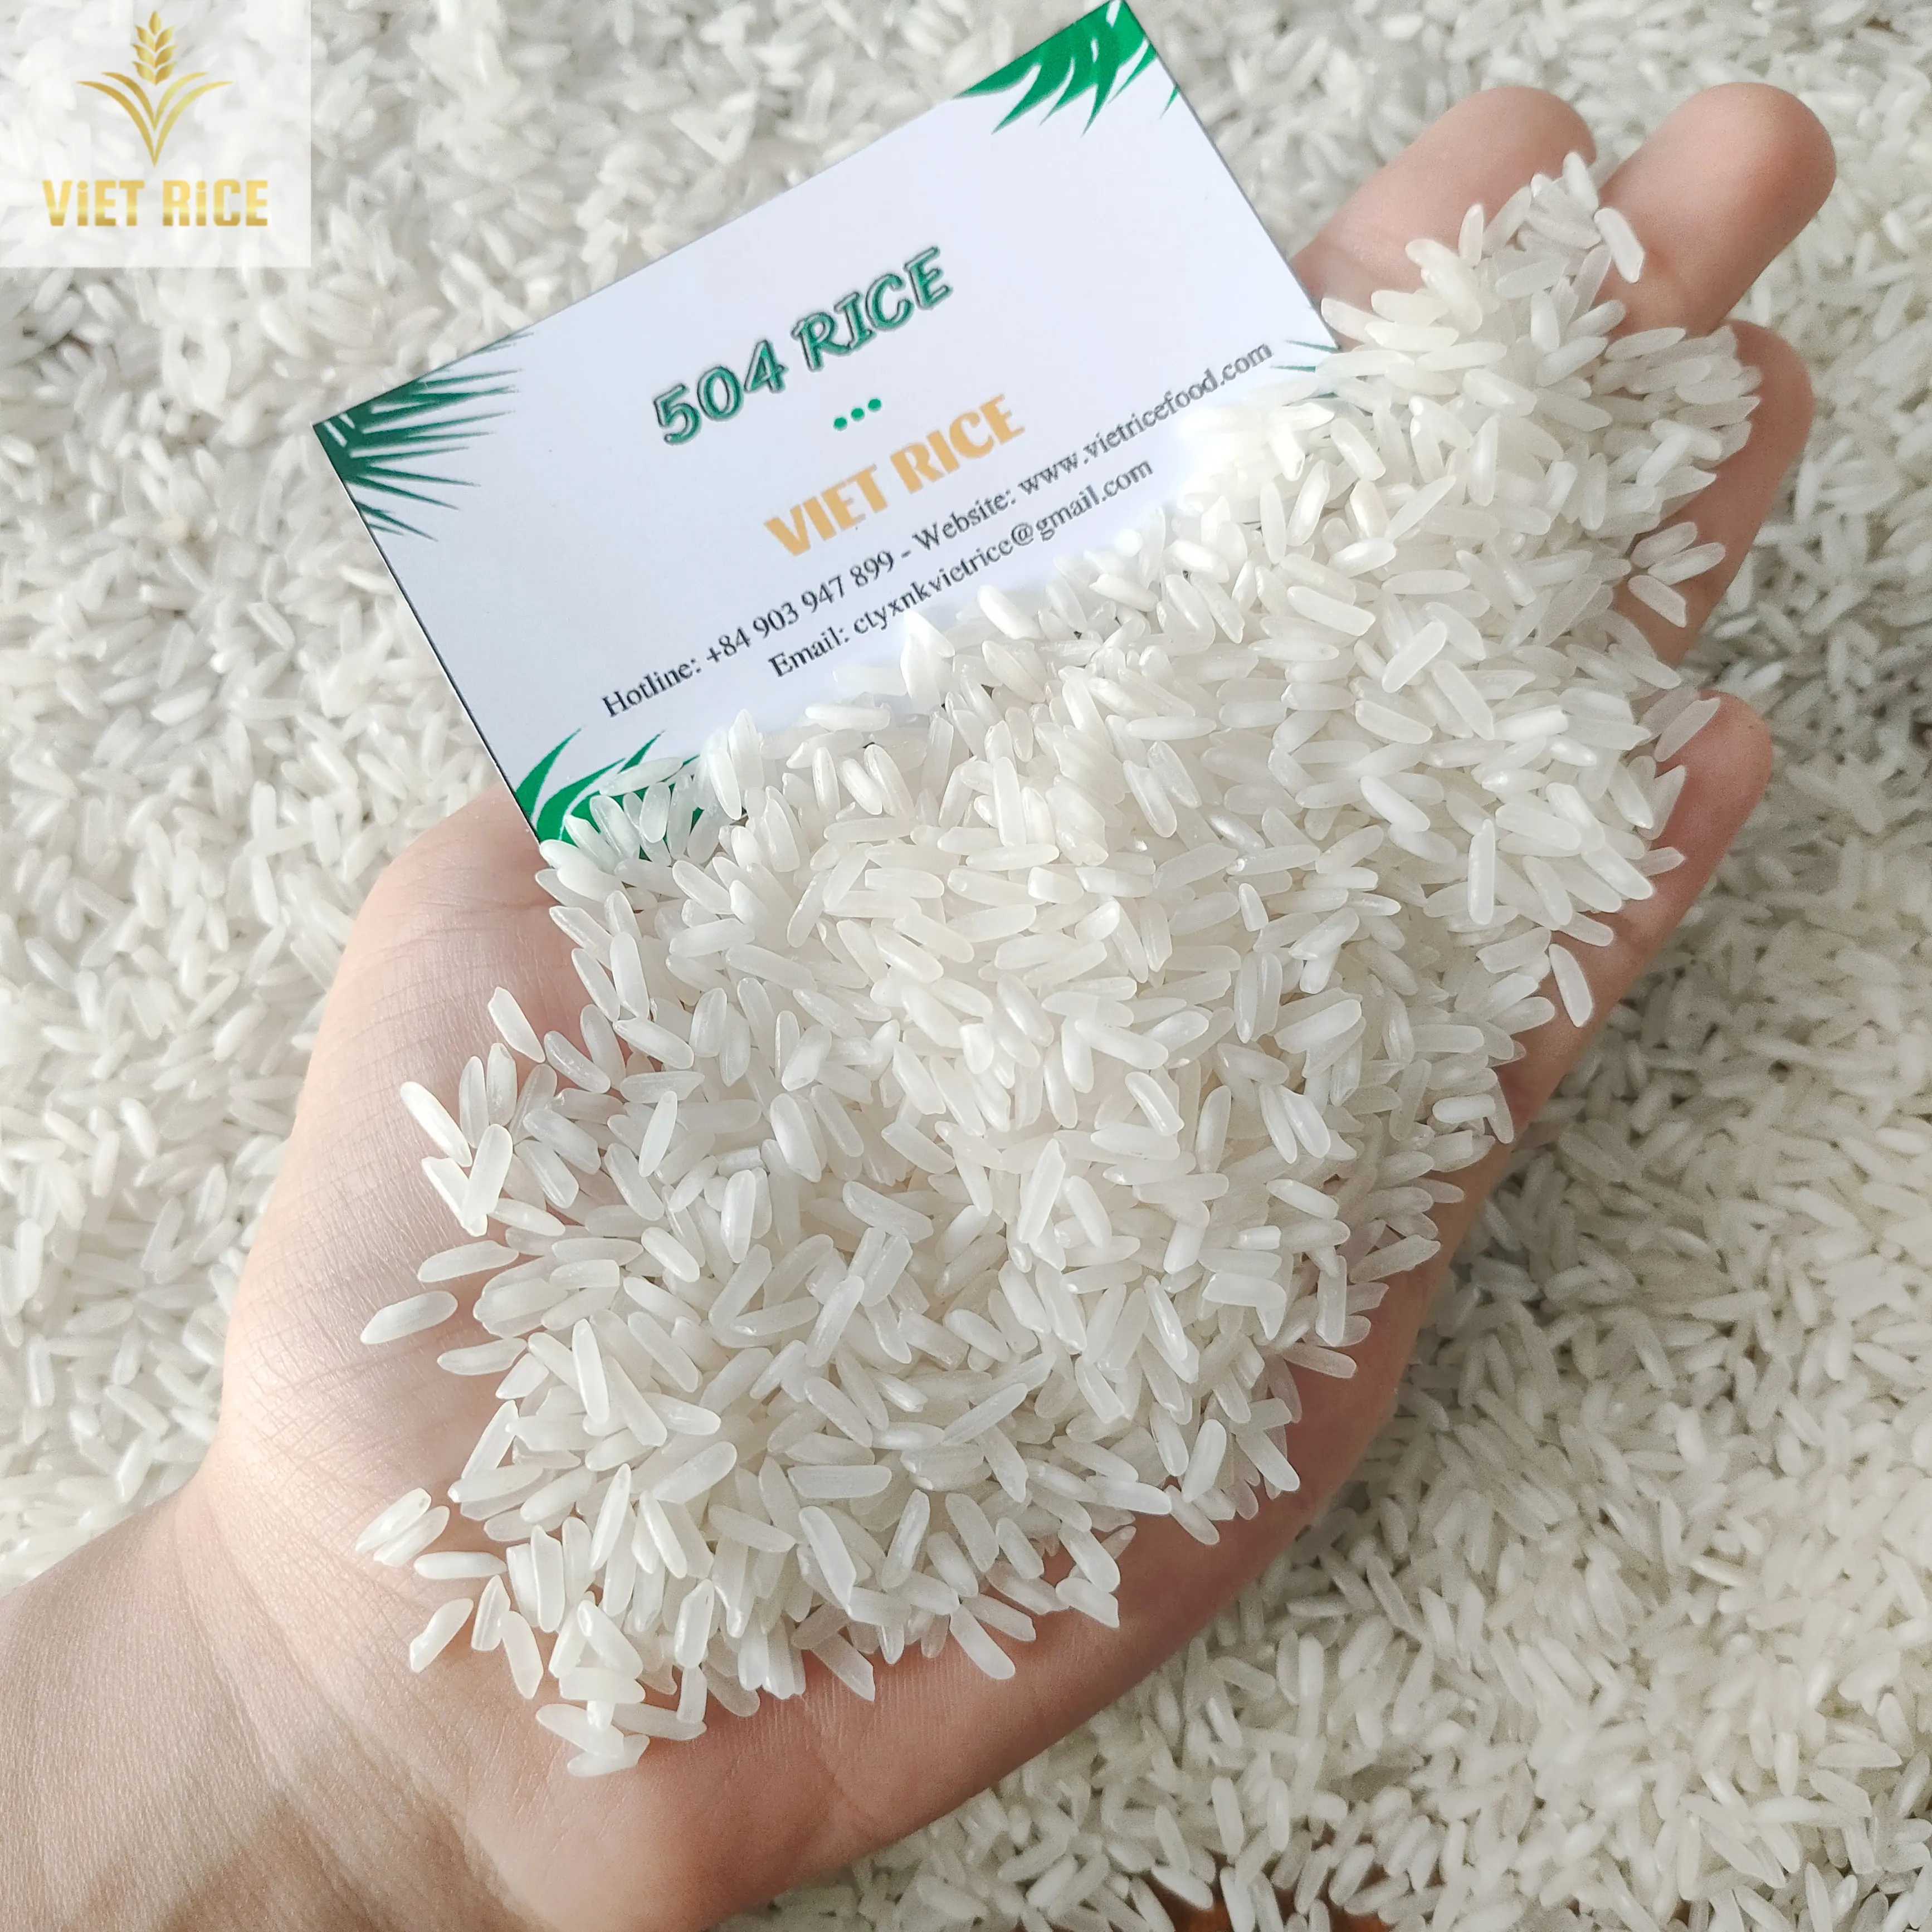 베트남 쌀 (Best Supplier, 504 RICE) 우수한 품질과 양의 국내, 국제적으로 모두 백미가 판매되고 있습니다